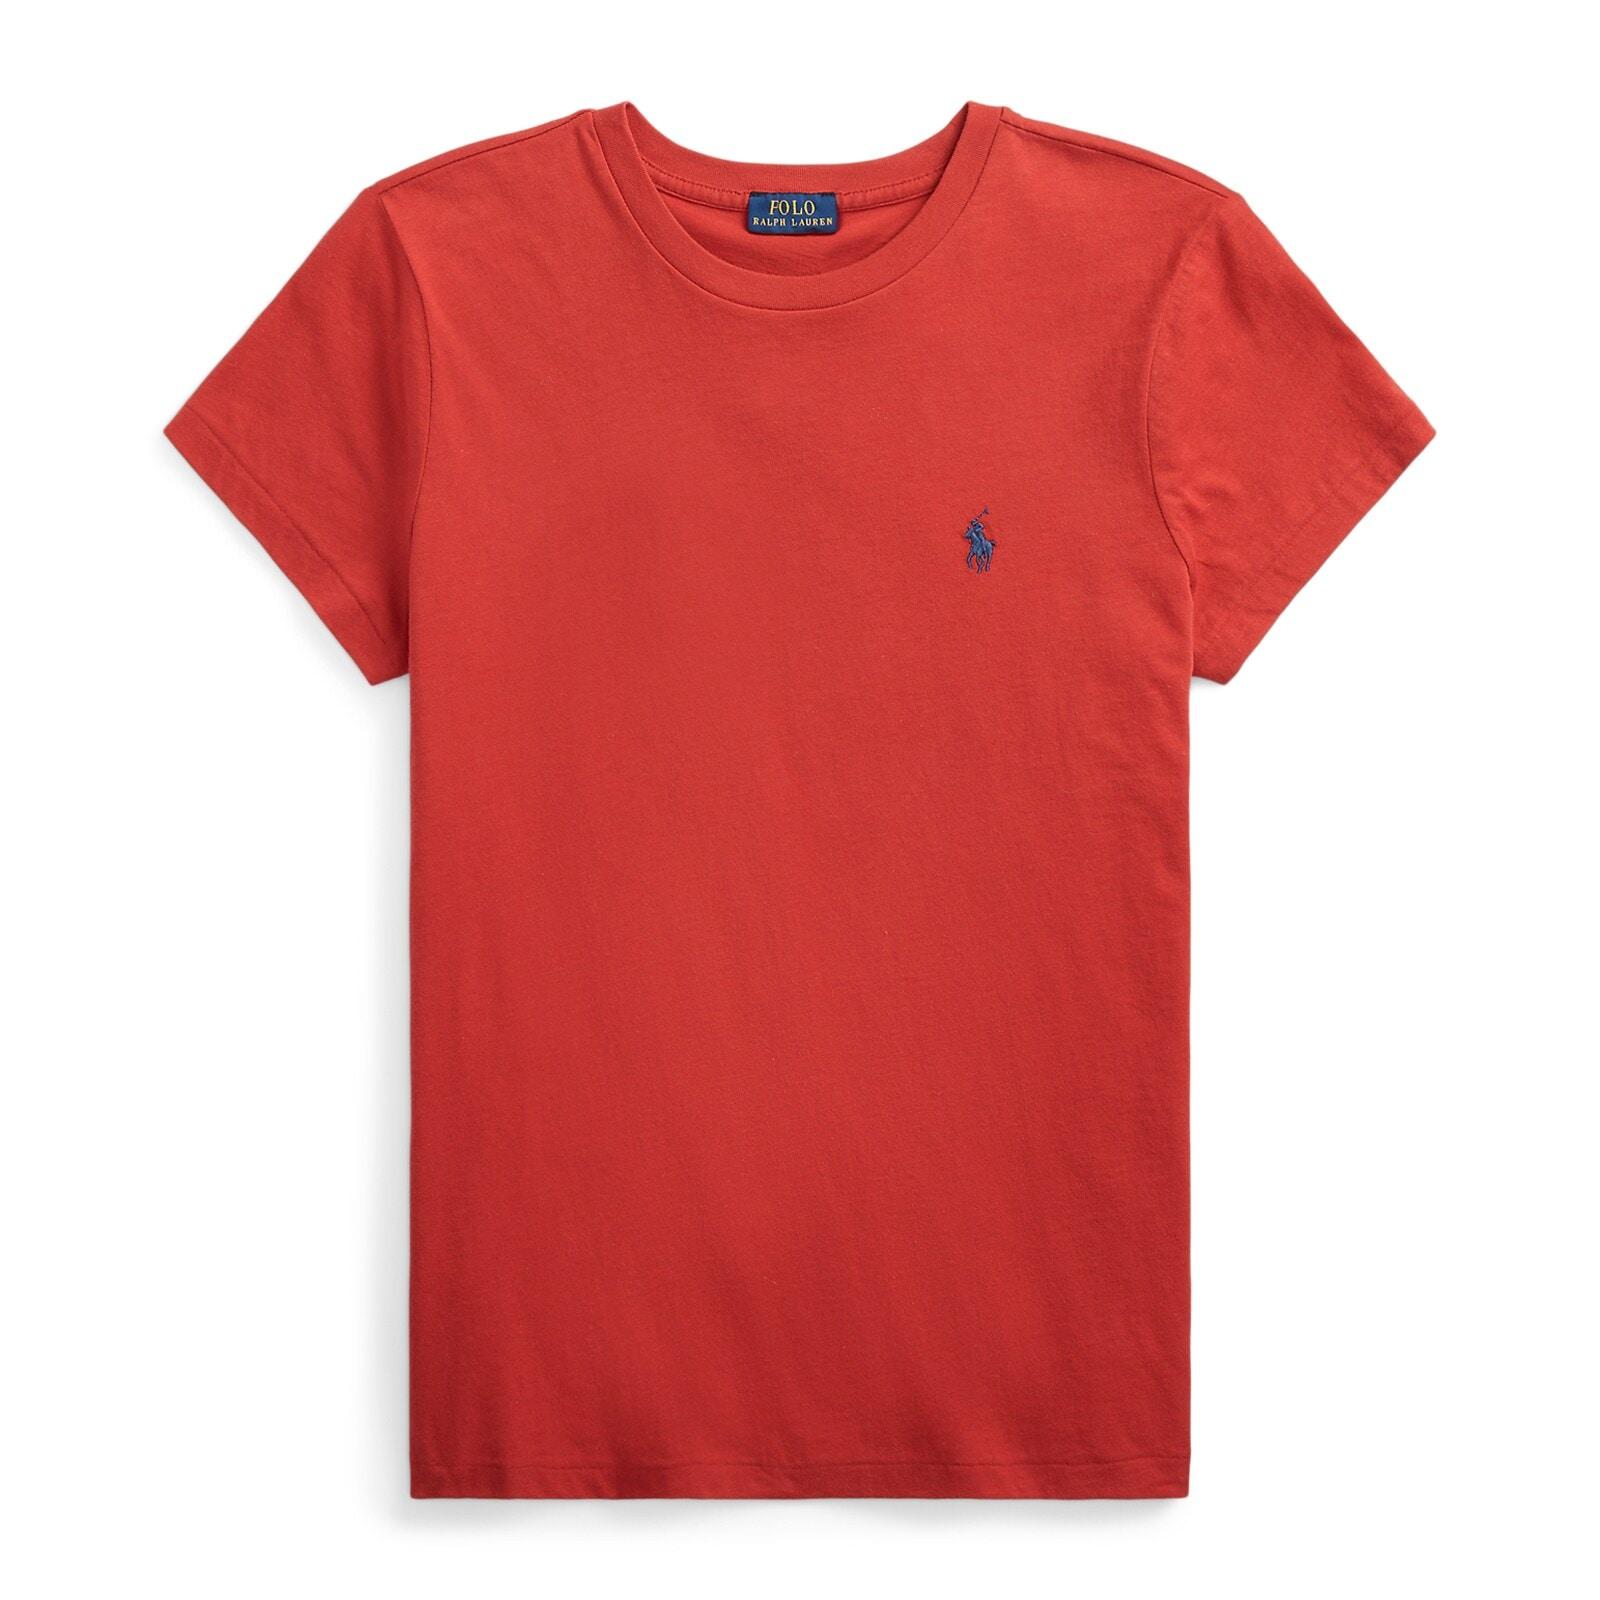 women red cotton jersey crewneck t-shirt